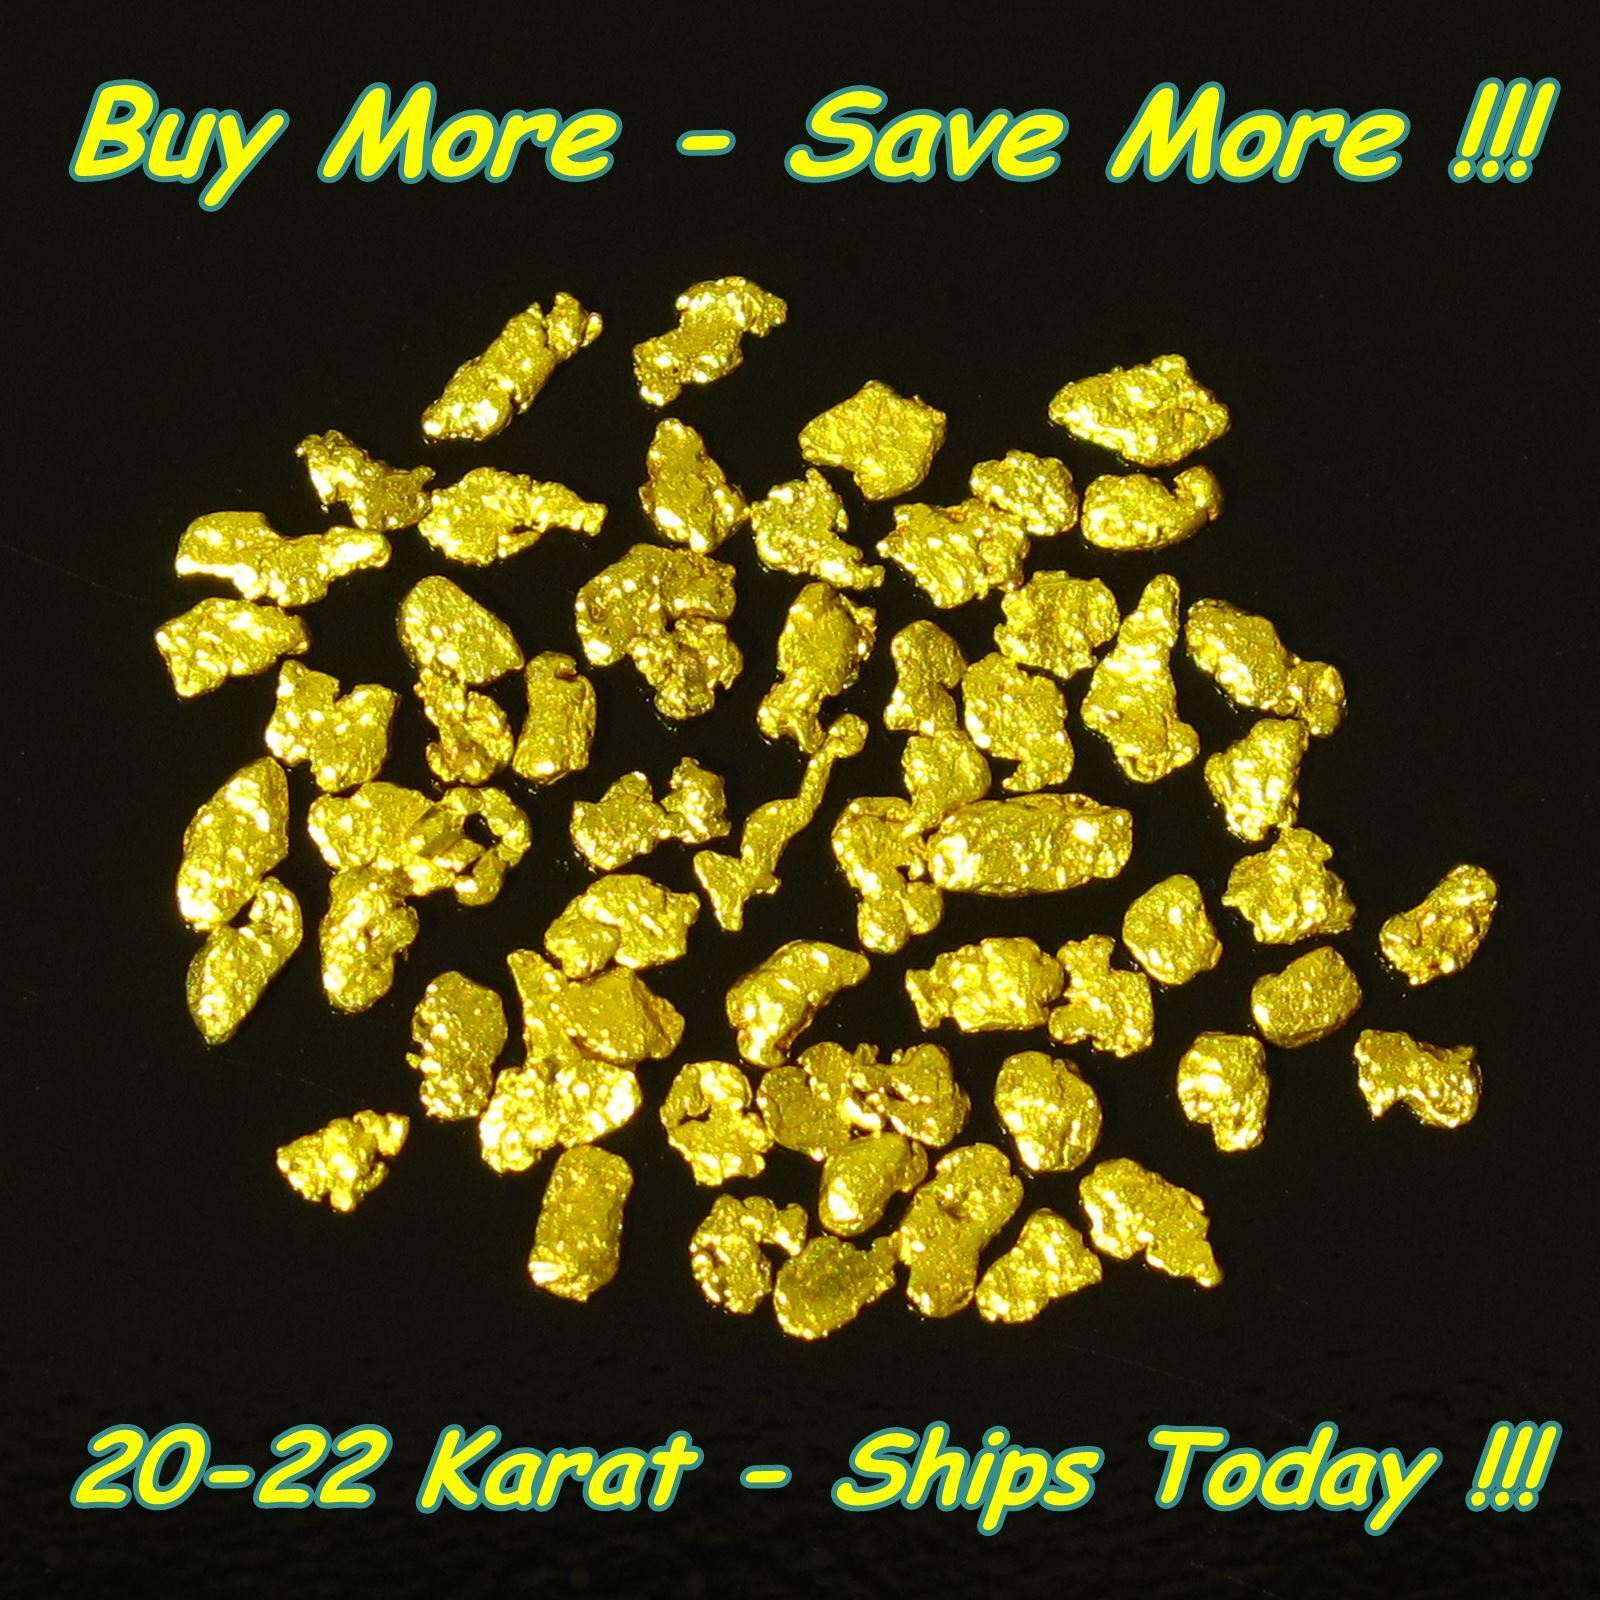 .570 Gram Gold 18-20k Alaska Natural Raw Placer Alaskan Nugget Bering Flake Fine